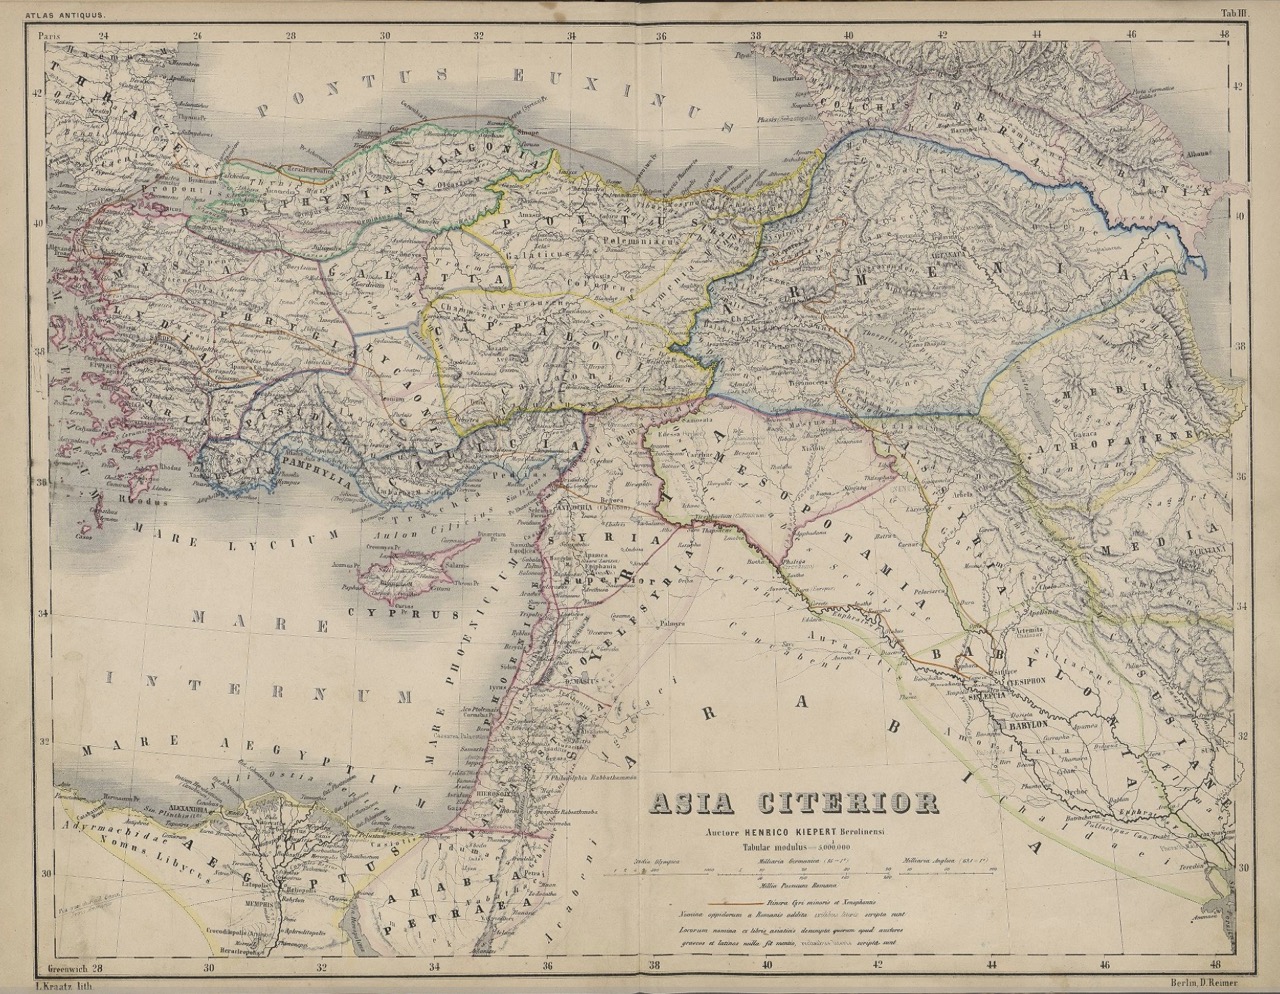 Kiepert: Atlas Antiquus 1863, "Asia Citerior"